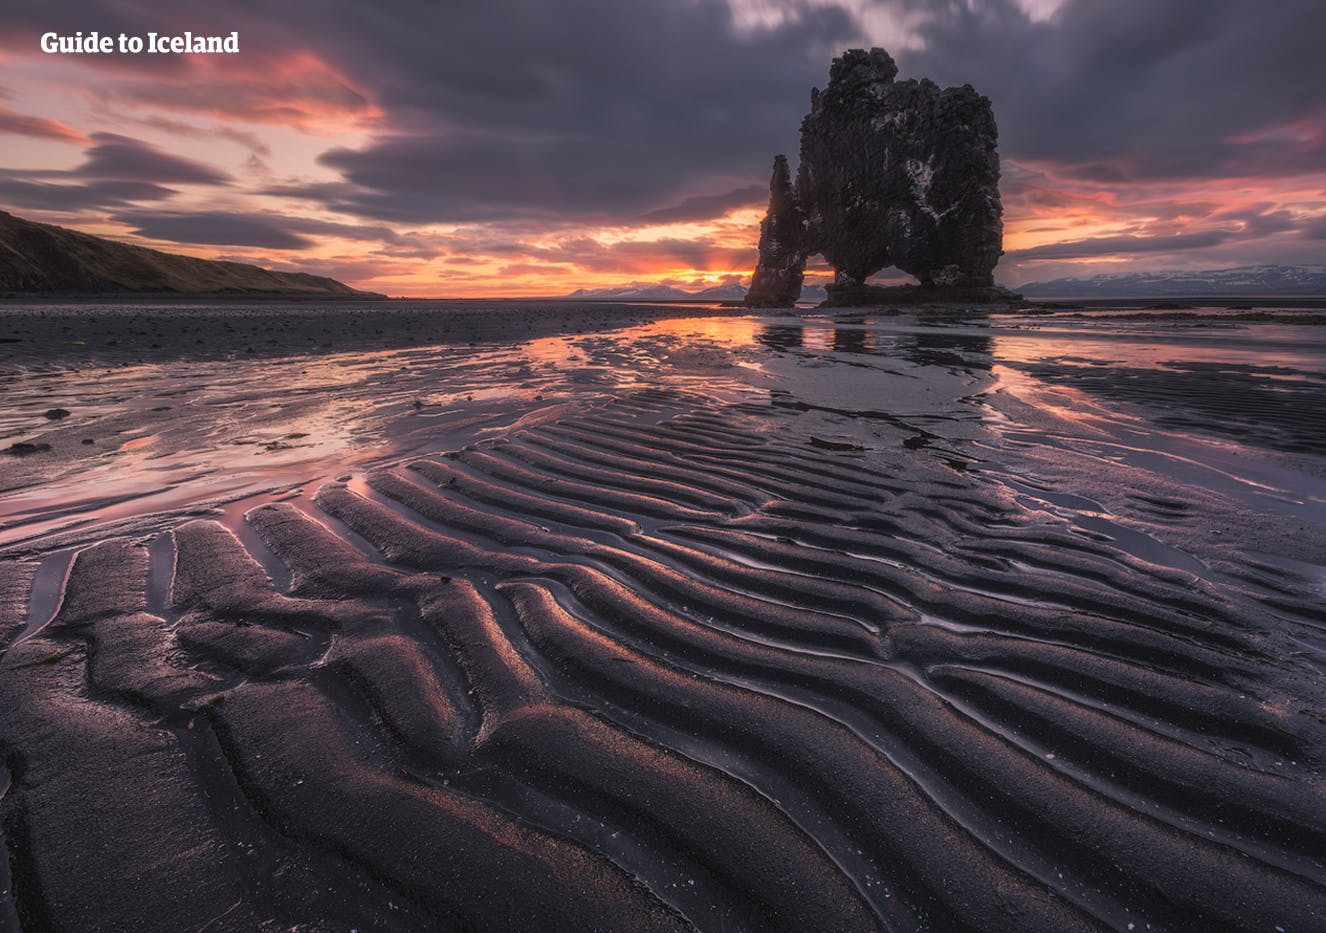 象のような形をした大岩、クヴィートセルクール。アイスランド北部にて